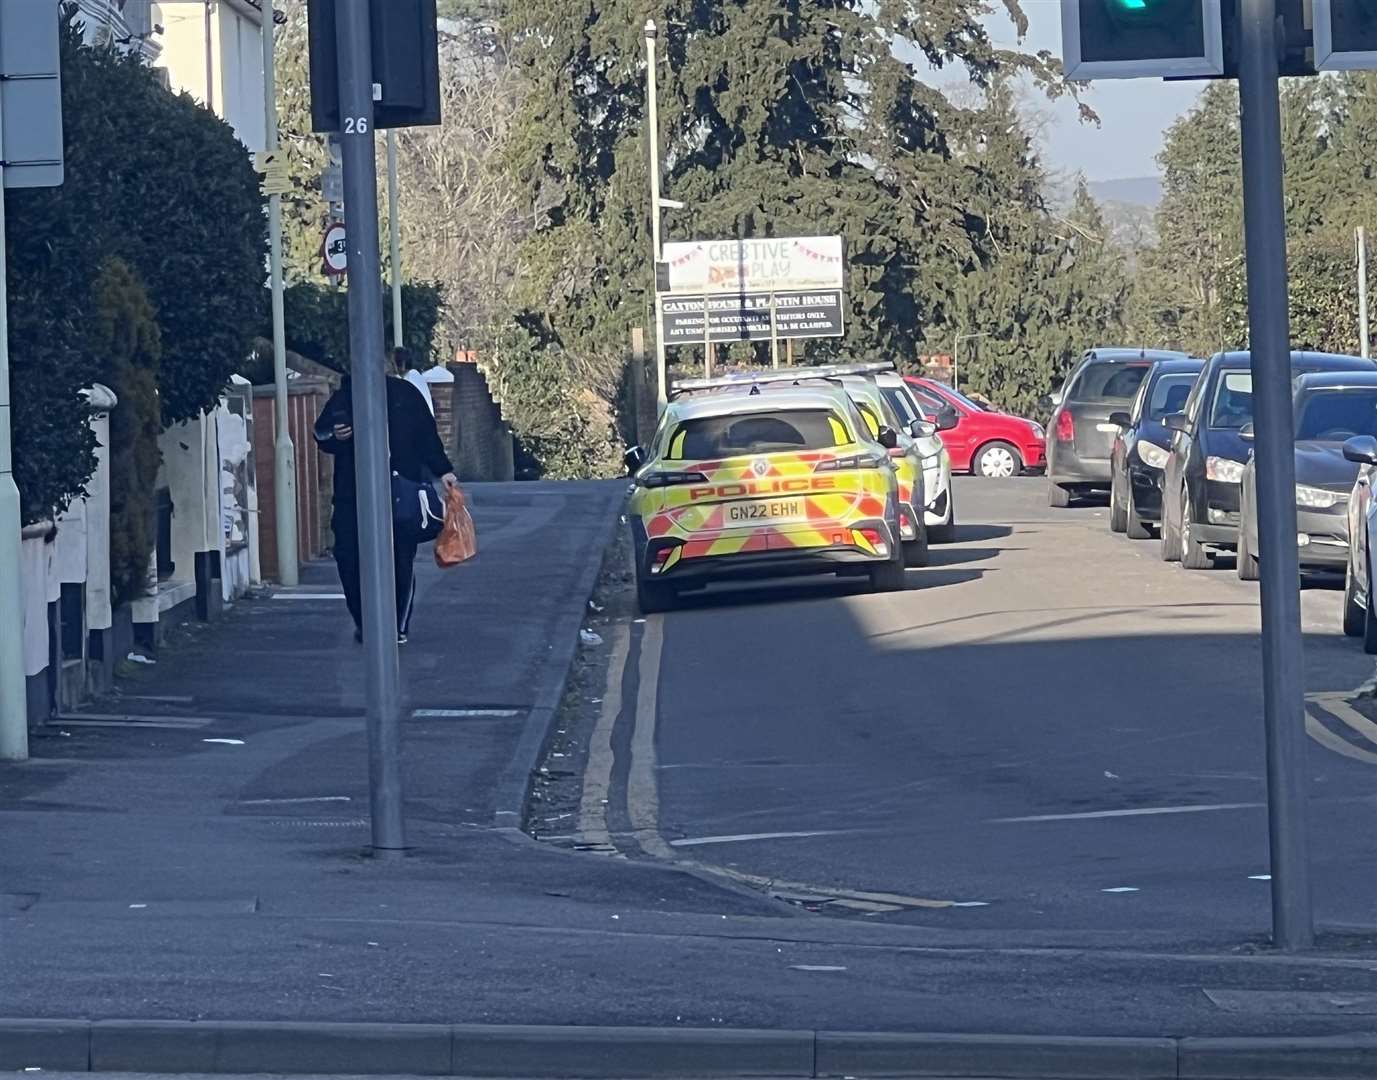 Three police cars were seen in Wellesley Road in Ashford